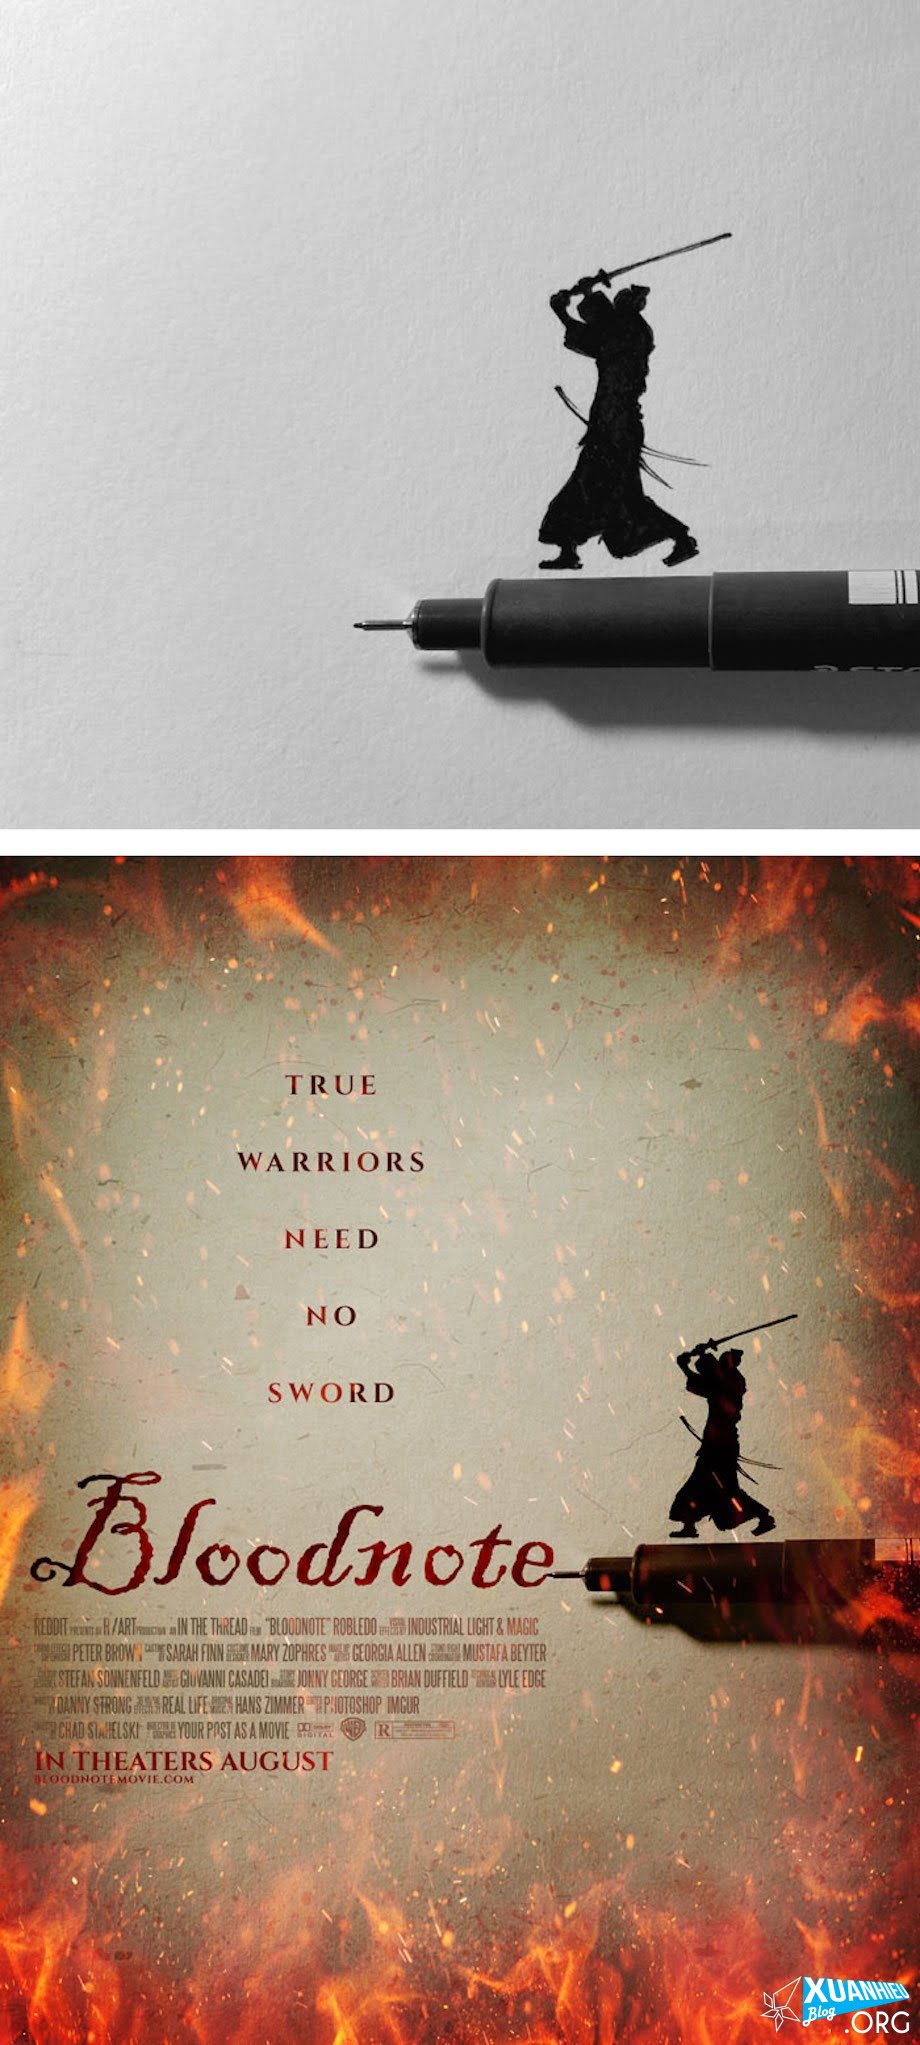 Võ sĩ đạo thực thụ không cần dùng đến đao kiếm, chỉ cần ngòi bút là đã có thể chứng tỏ sức mạnh